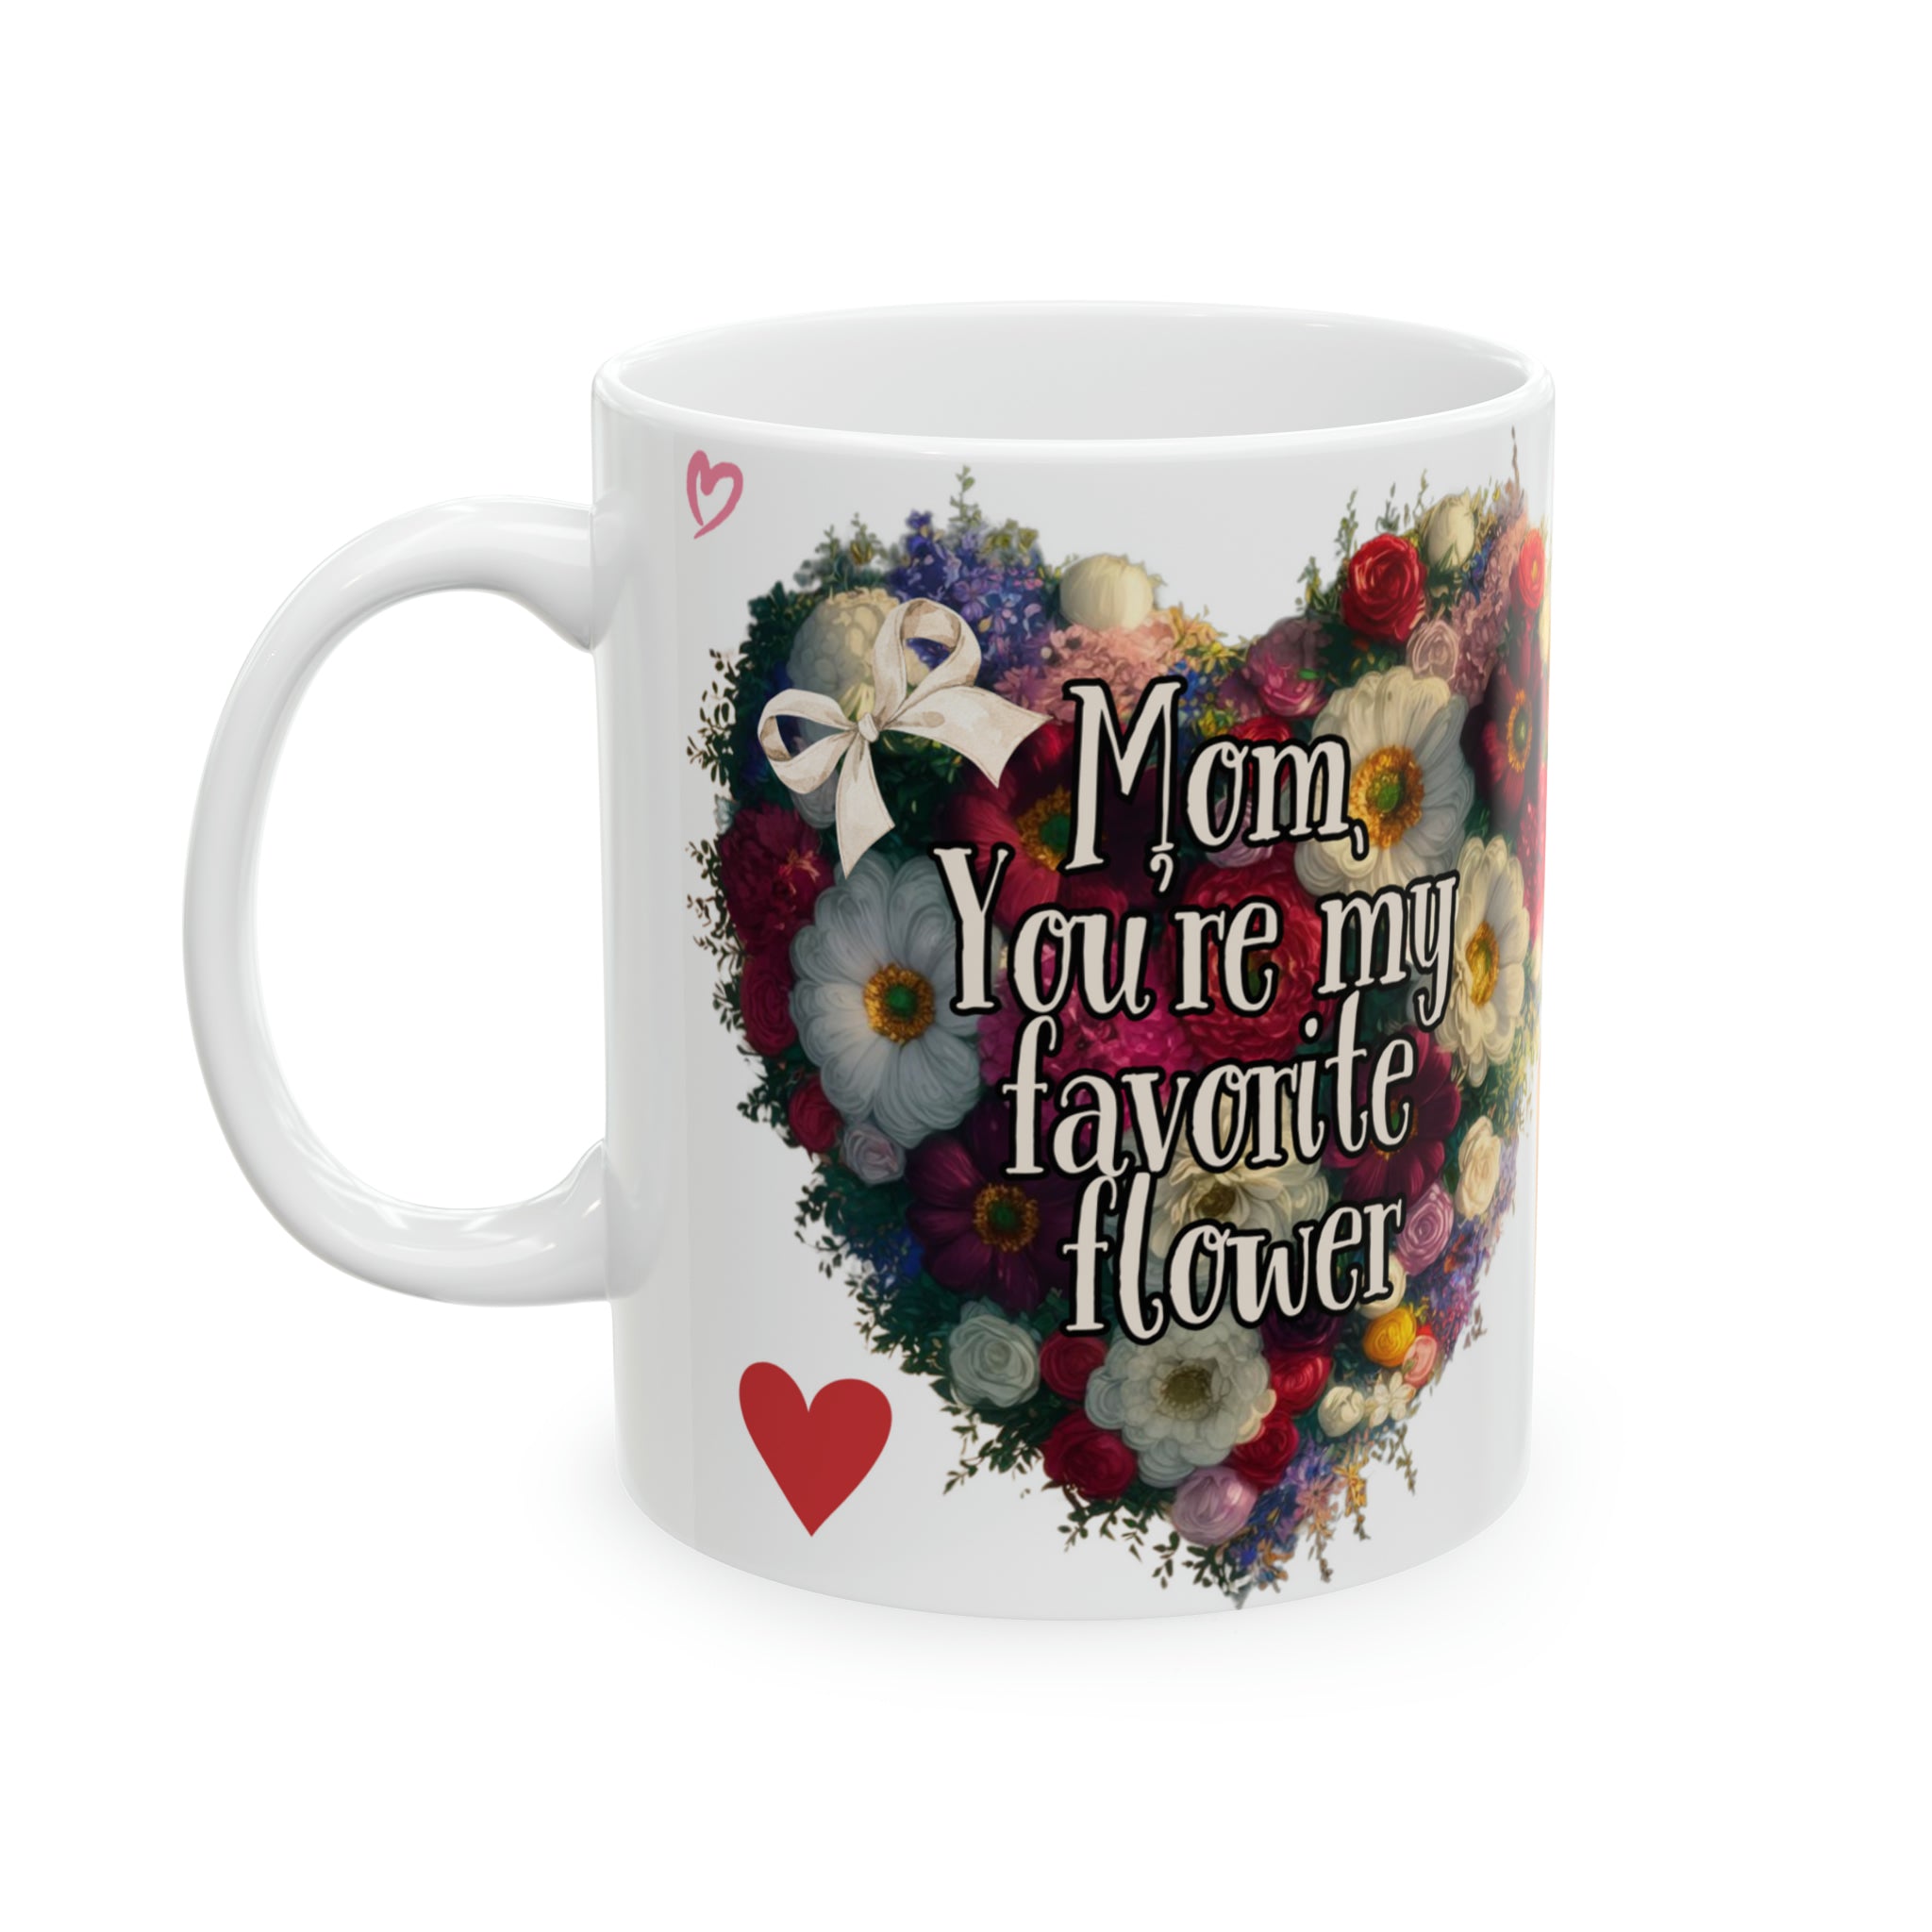 Mom, You're my favorite flower - Ceramic Mug, 11oz